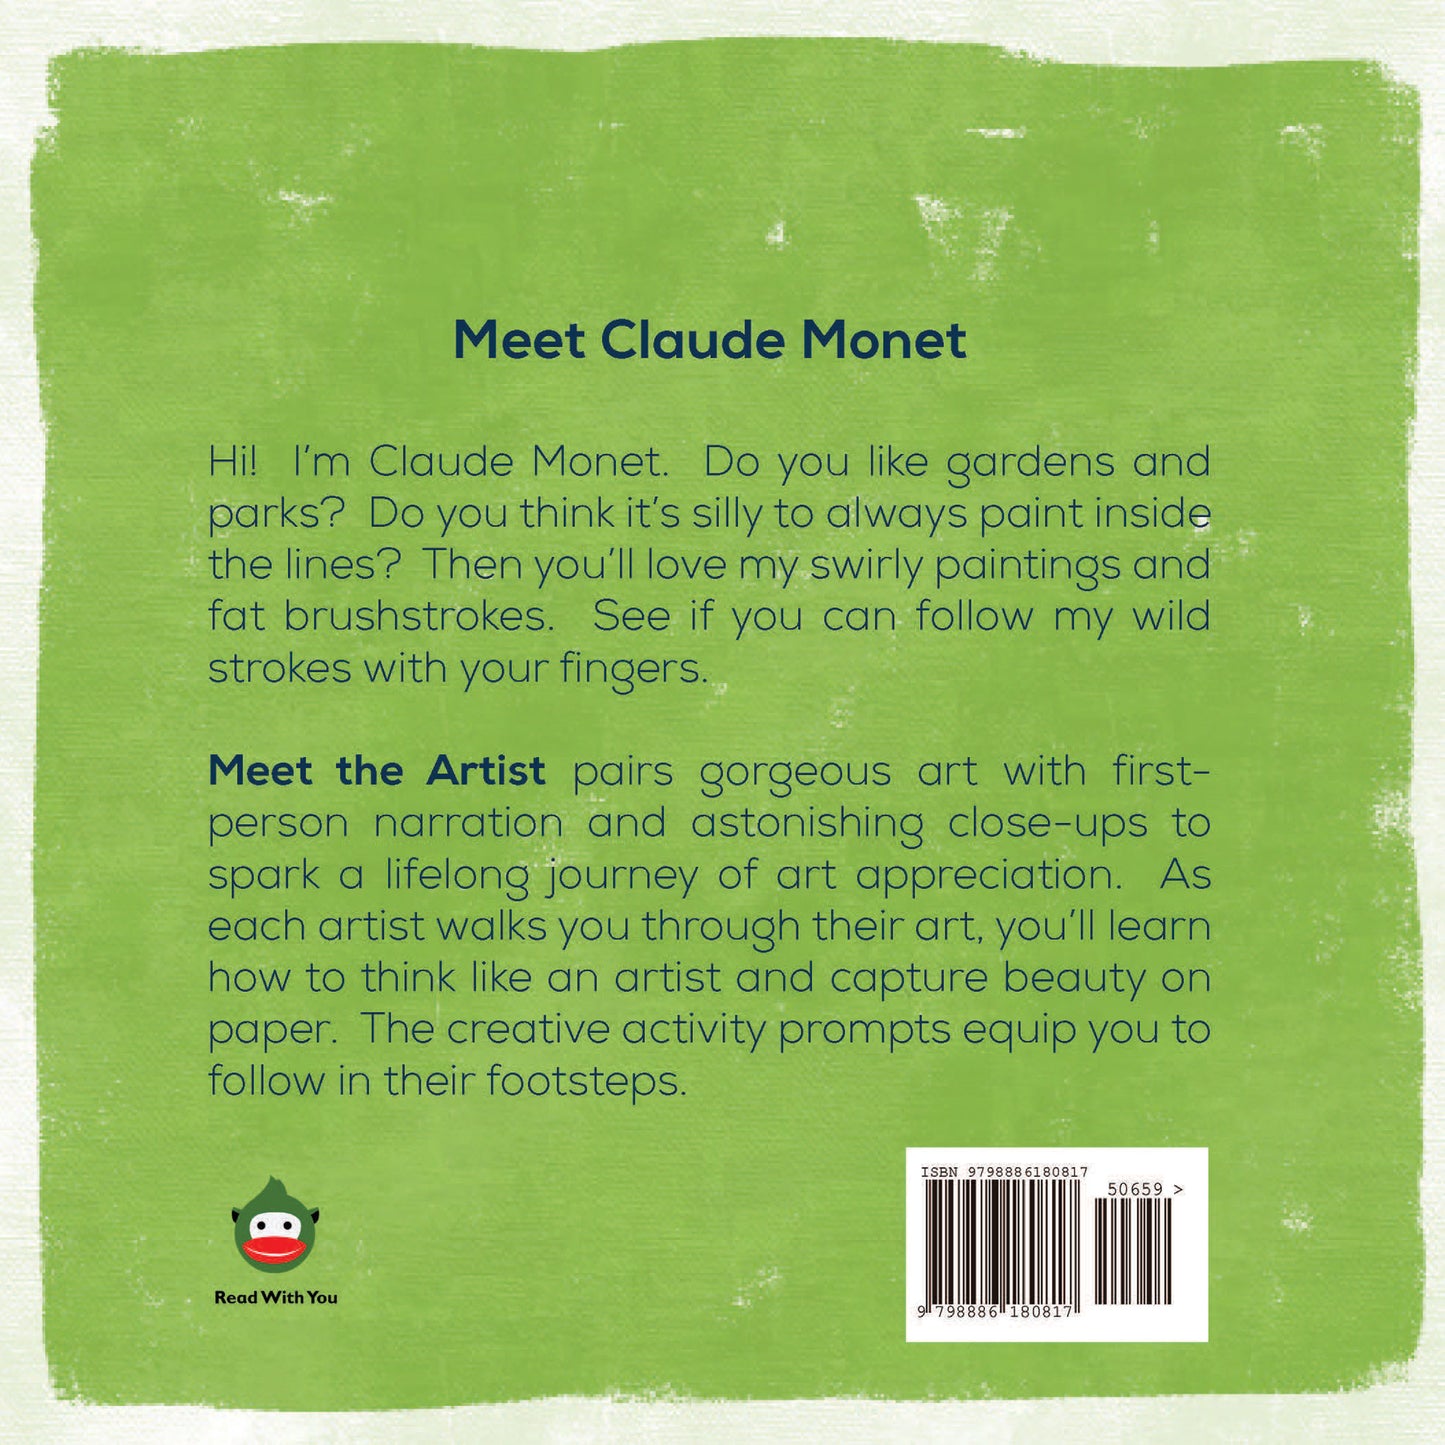 Meet Claude Monet